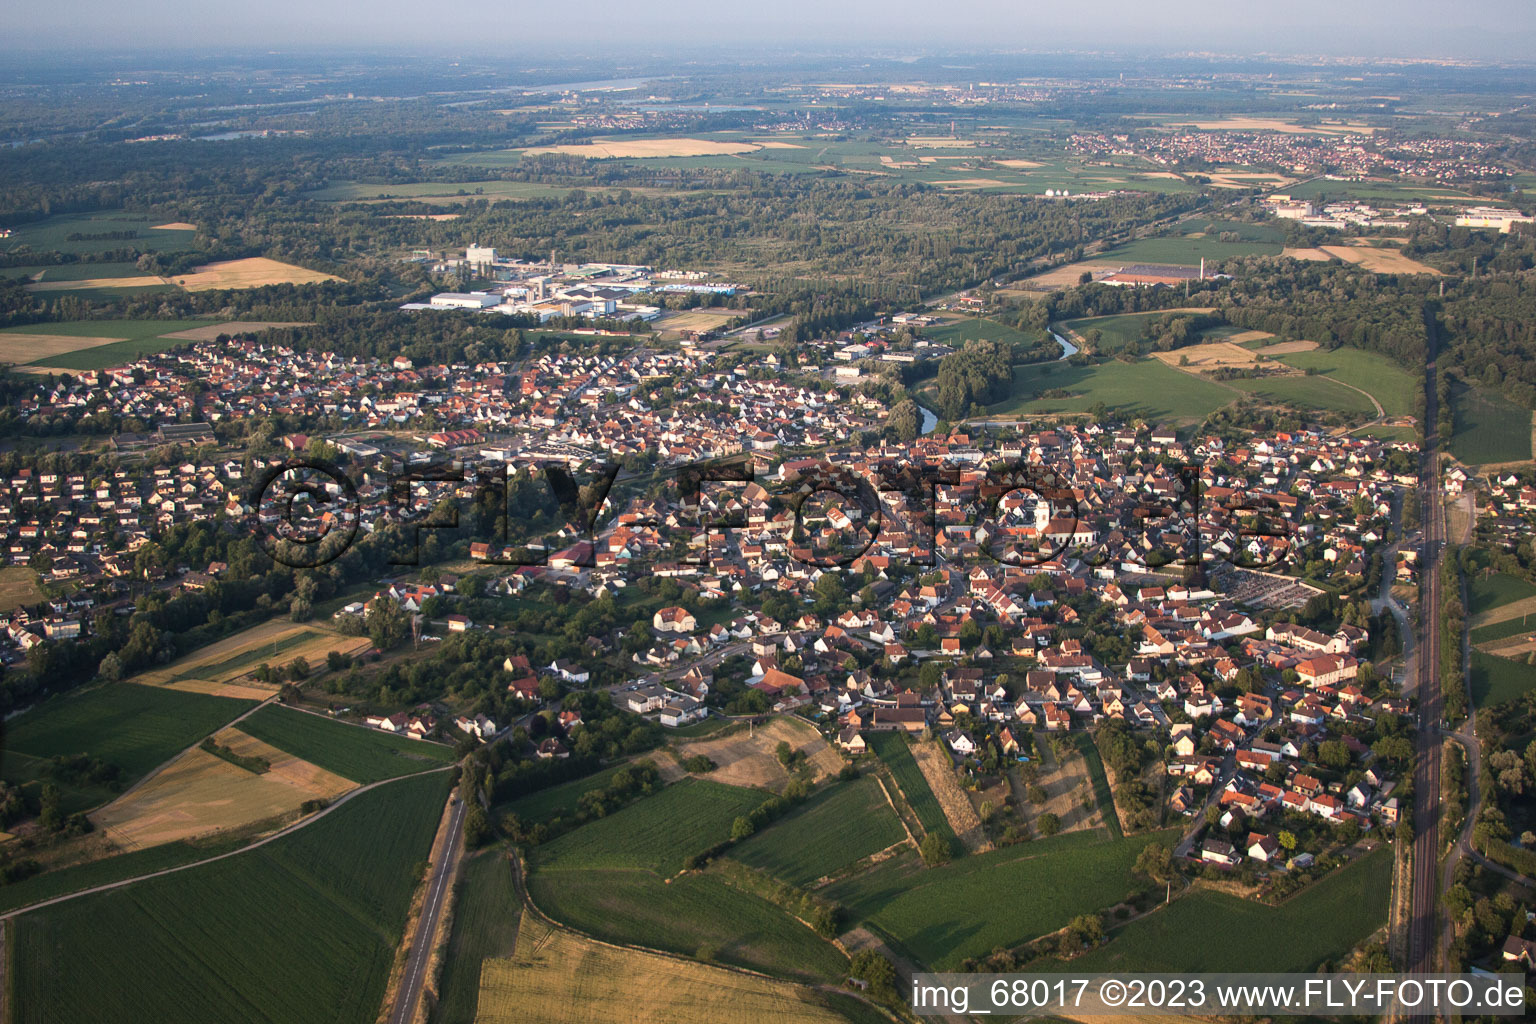 Drusenheim dans le département Bas Rhin, France du point de vue du drone